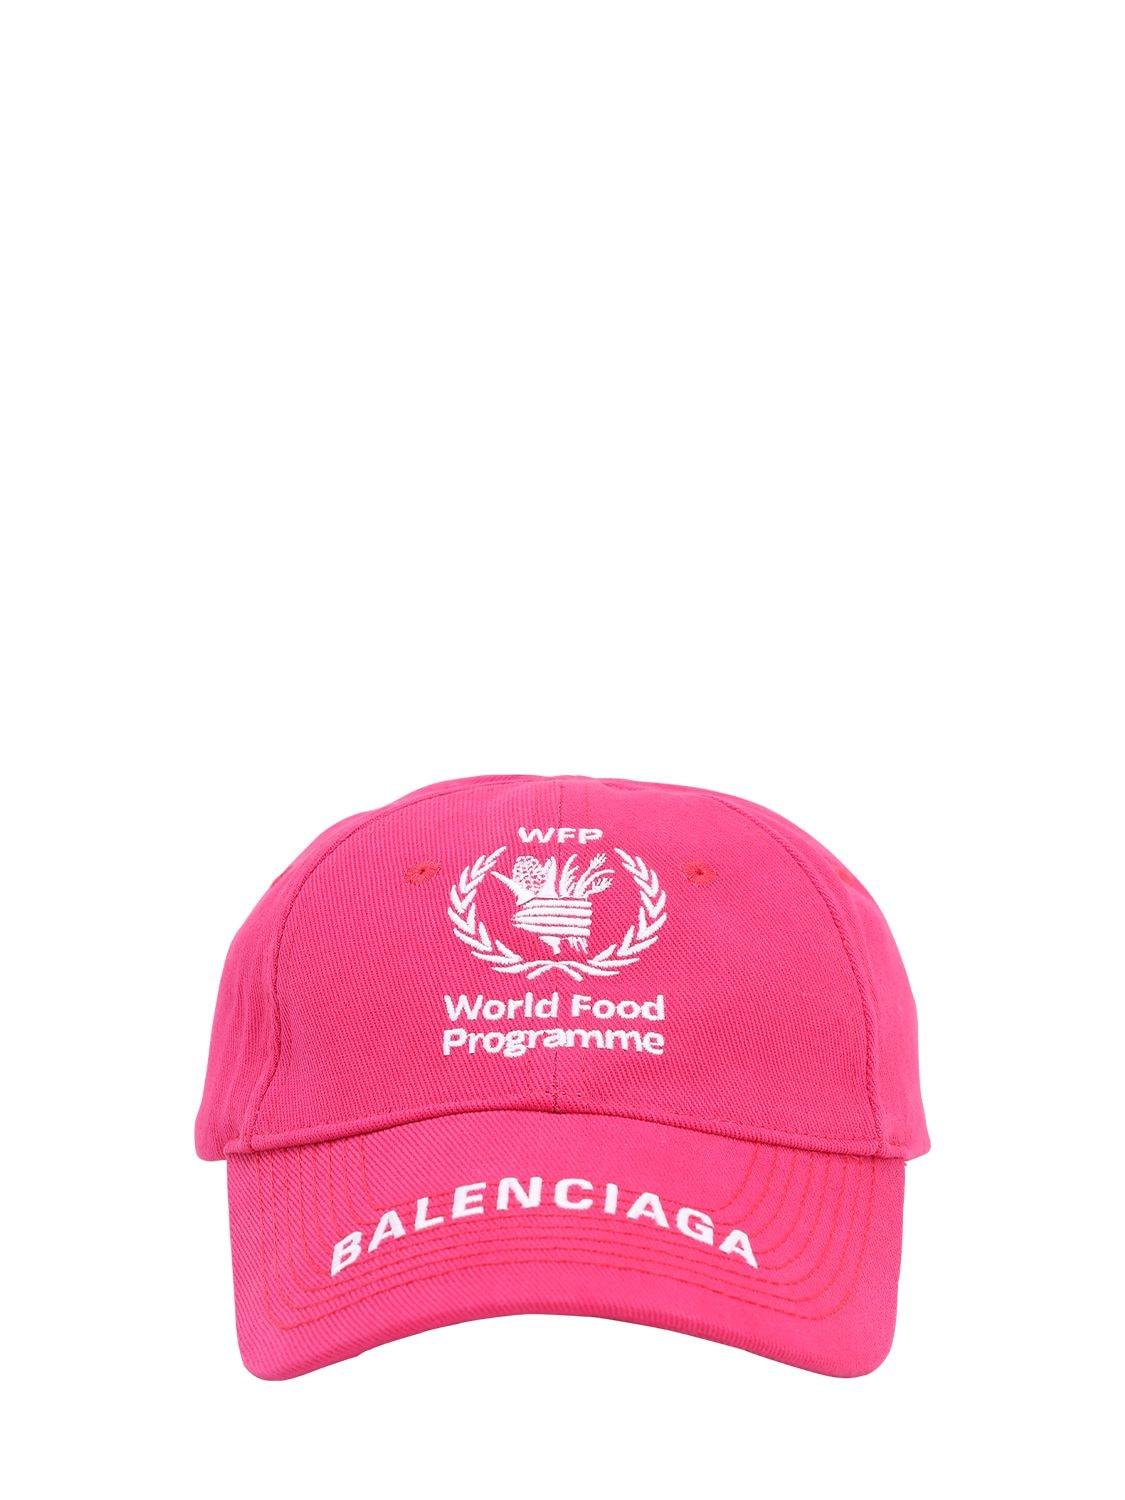 pink balenciaga hat